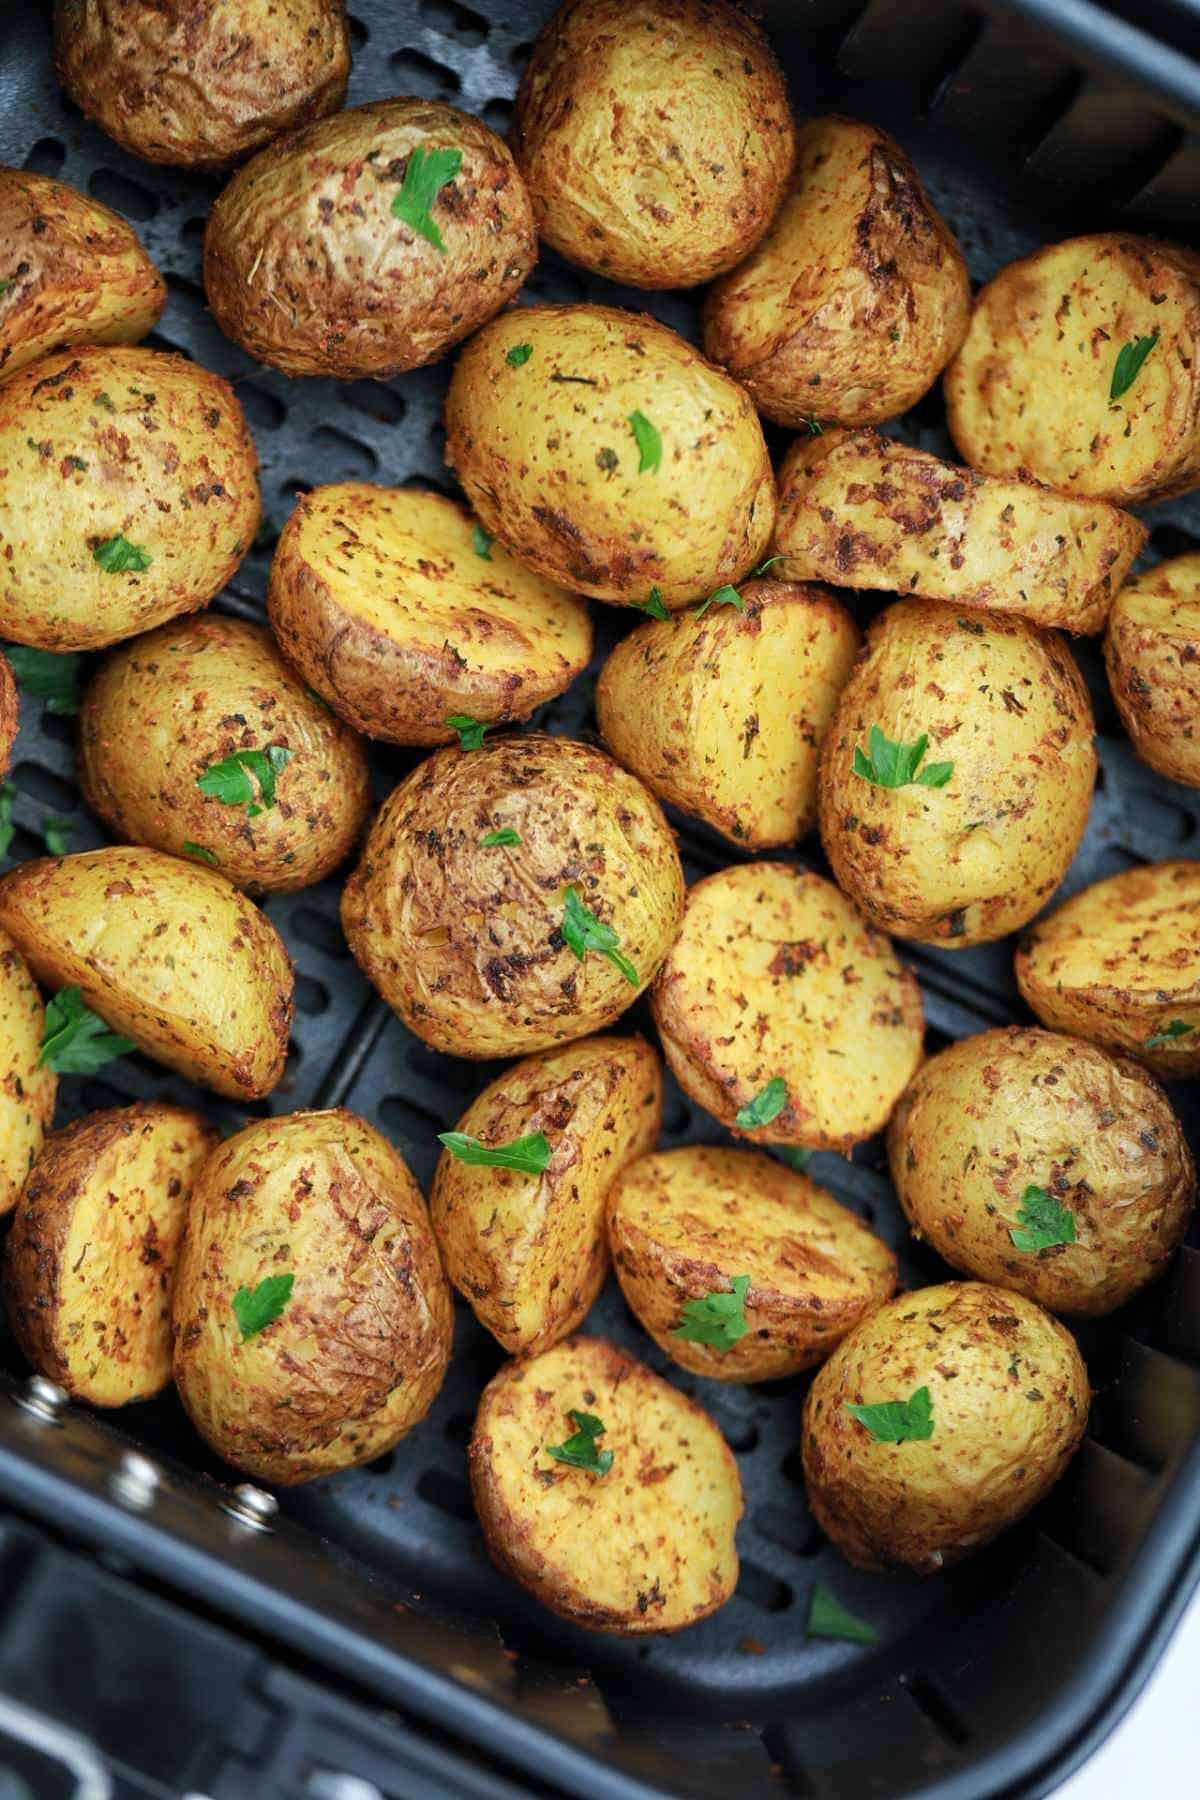 roasted baby potatoes in air fryer basket.